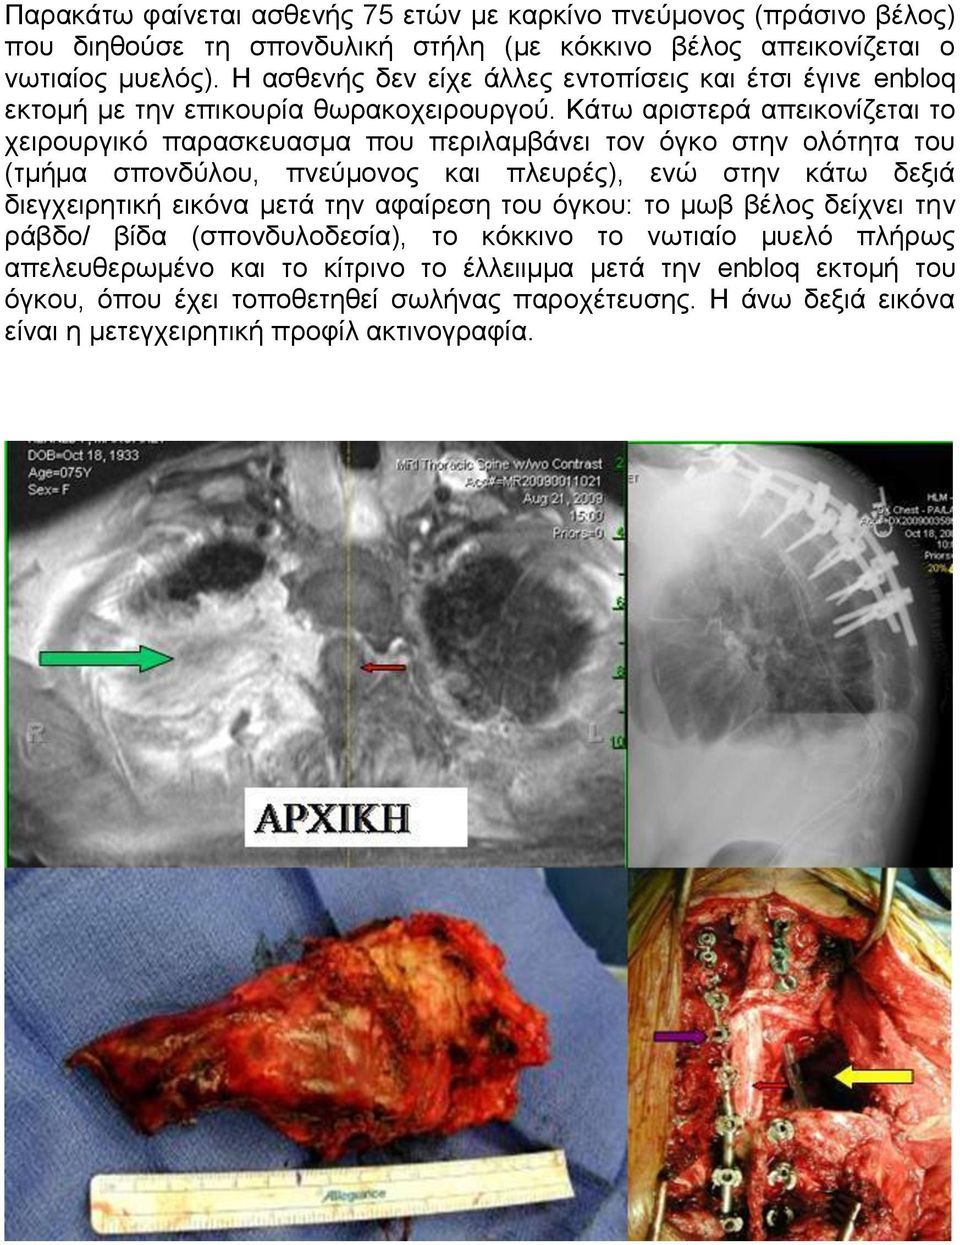 Κάτω αριστερά απεικονίζεται το χειρουργικό παρασκευασμα που περιλαμβάνει τον όγκο στην ολότητα του (τμήμα σπονδύλου, πνεύμονος και πλευρές), ενώ στην κάτω δεξιά διεγχειρητική εικόνα